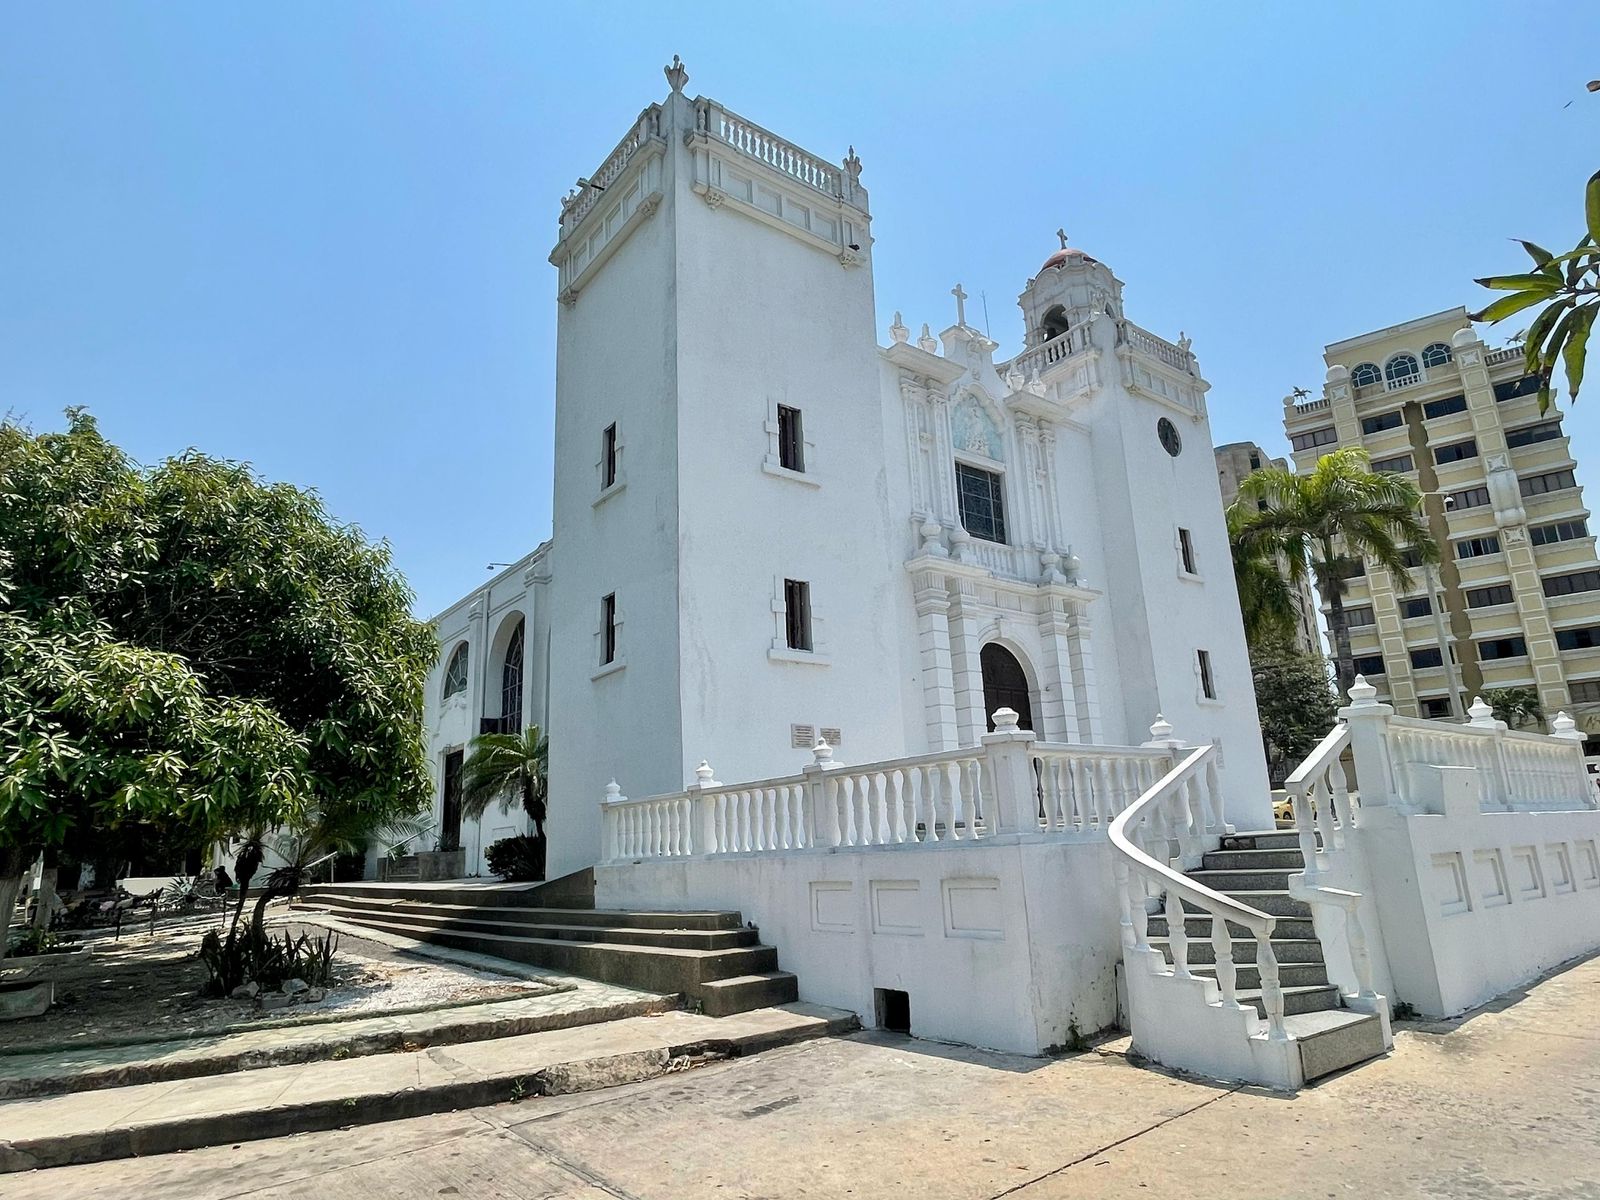  La iglesia Inmaculada Concepción se encuentra ubicada en la carrera 57 # 68- 85.